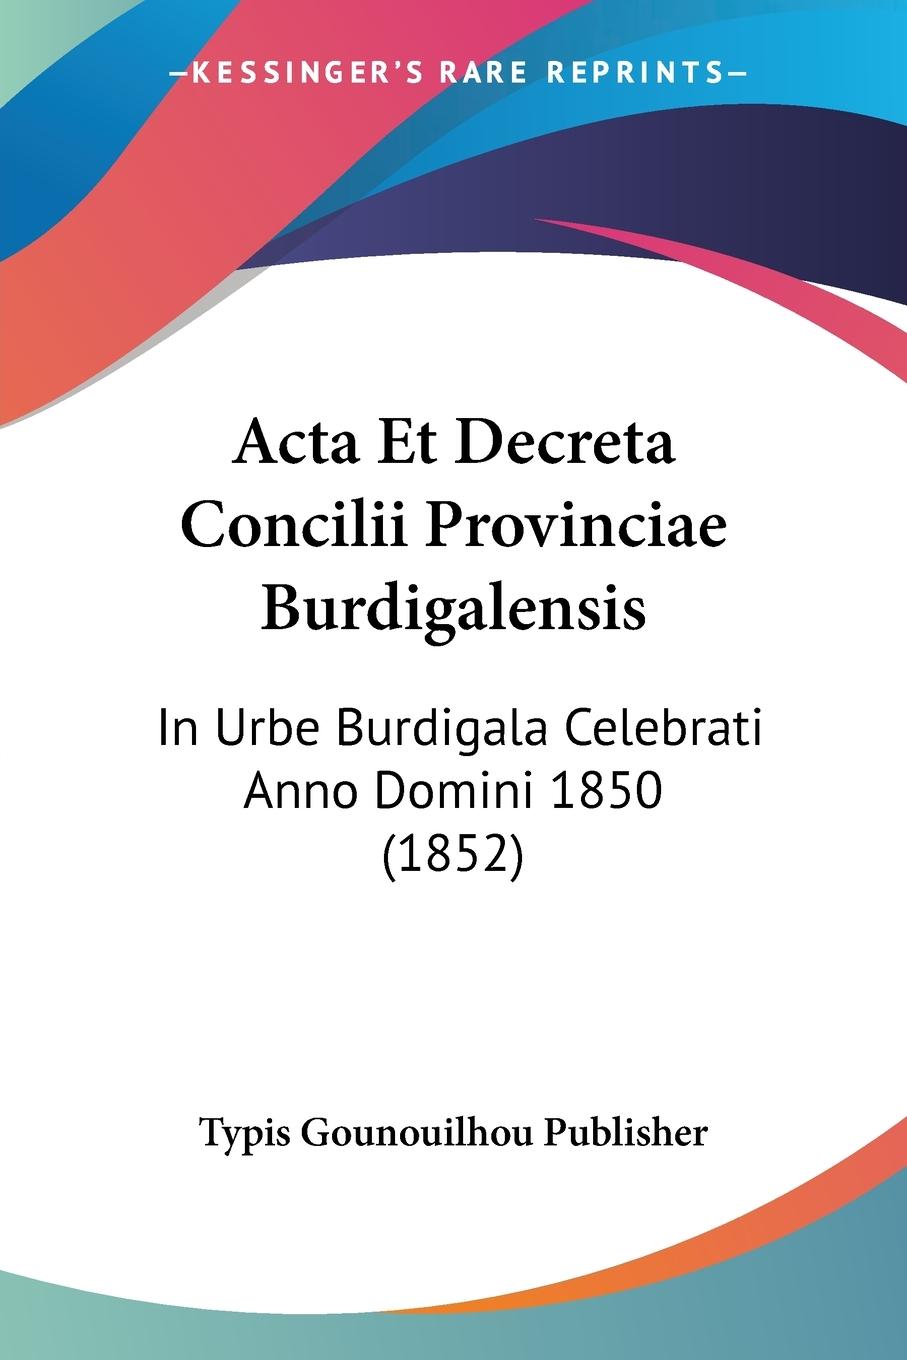 Acta Et Decreta Concilii Provinciae Burdigalensis - Typis Gounouilhou Publisher